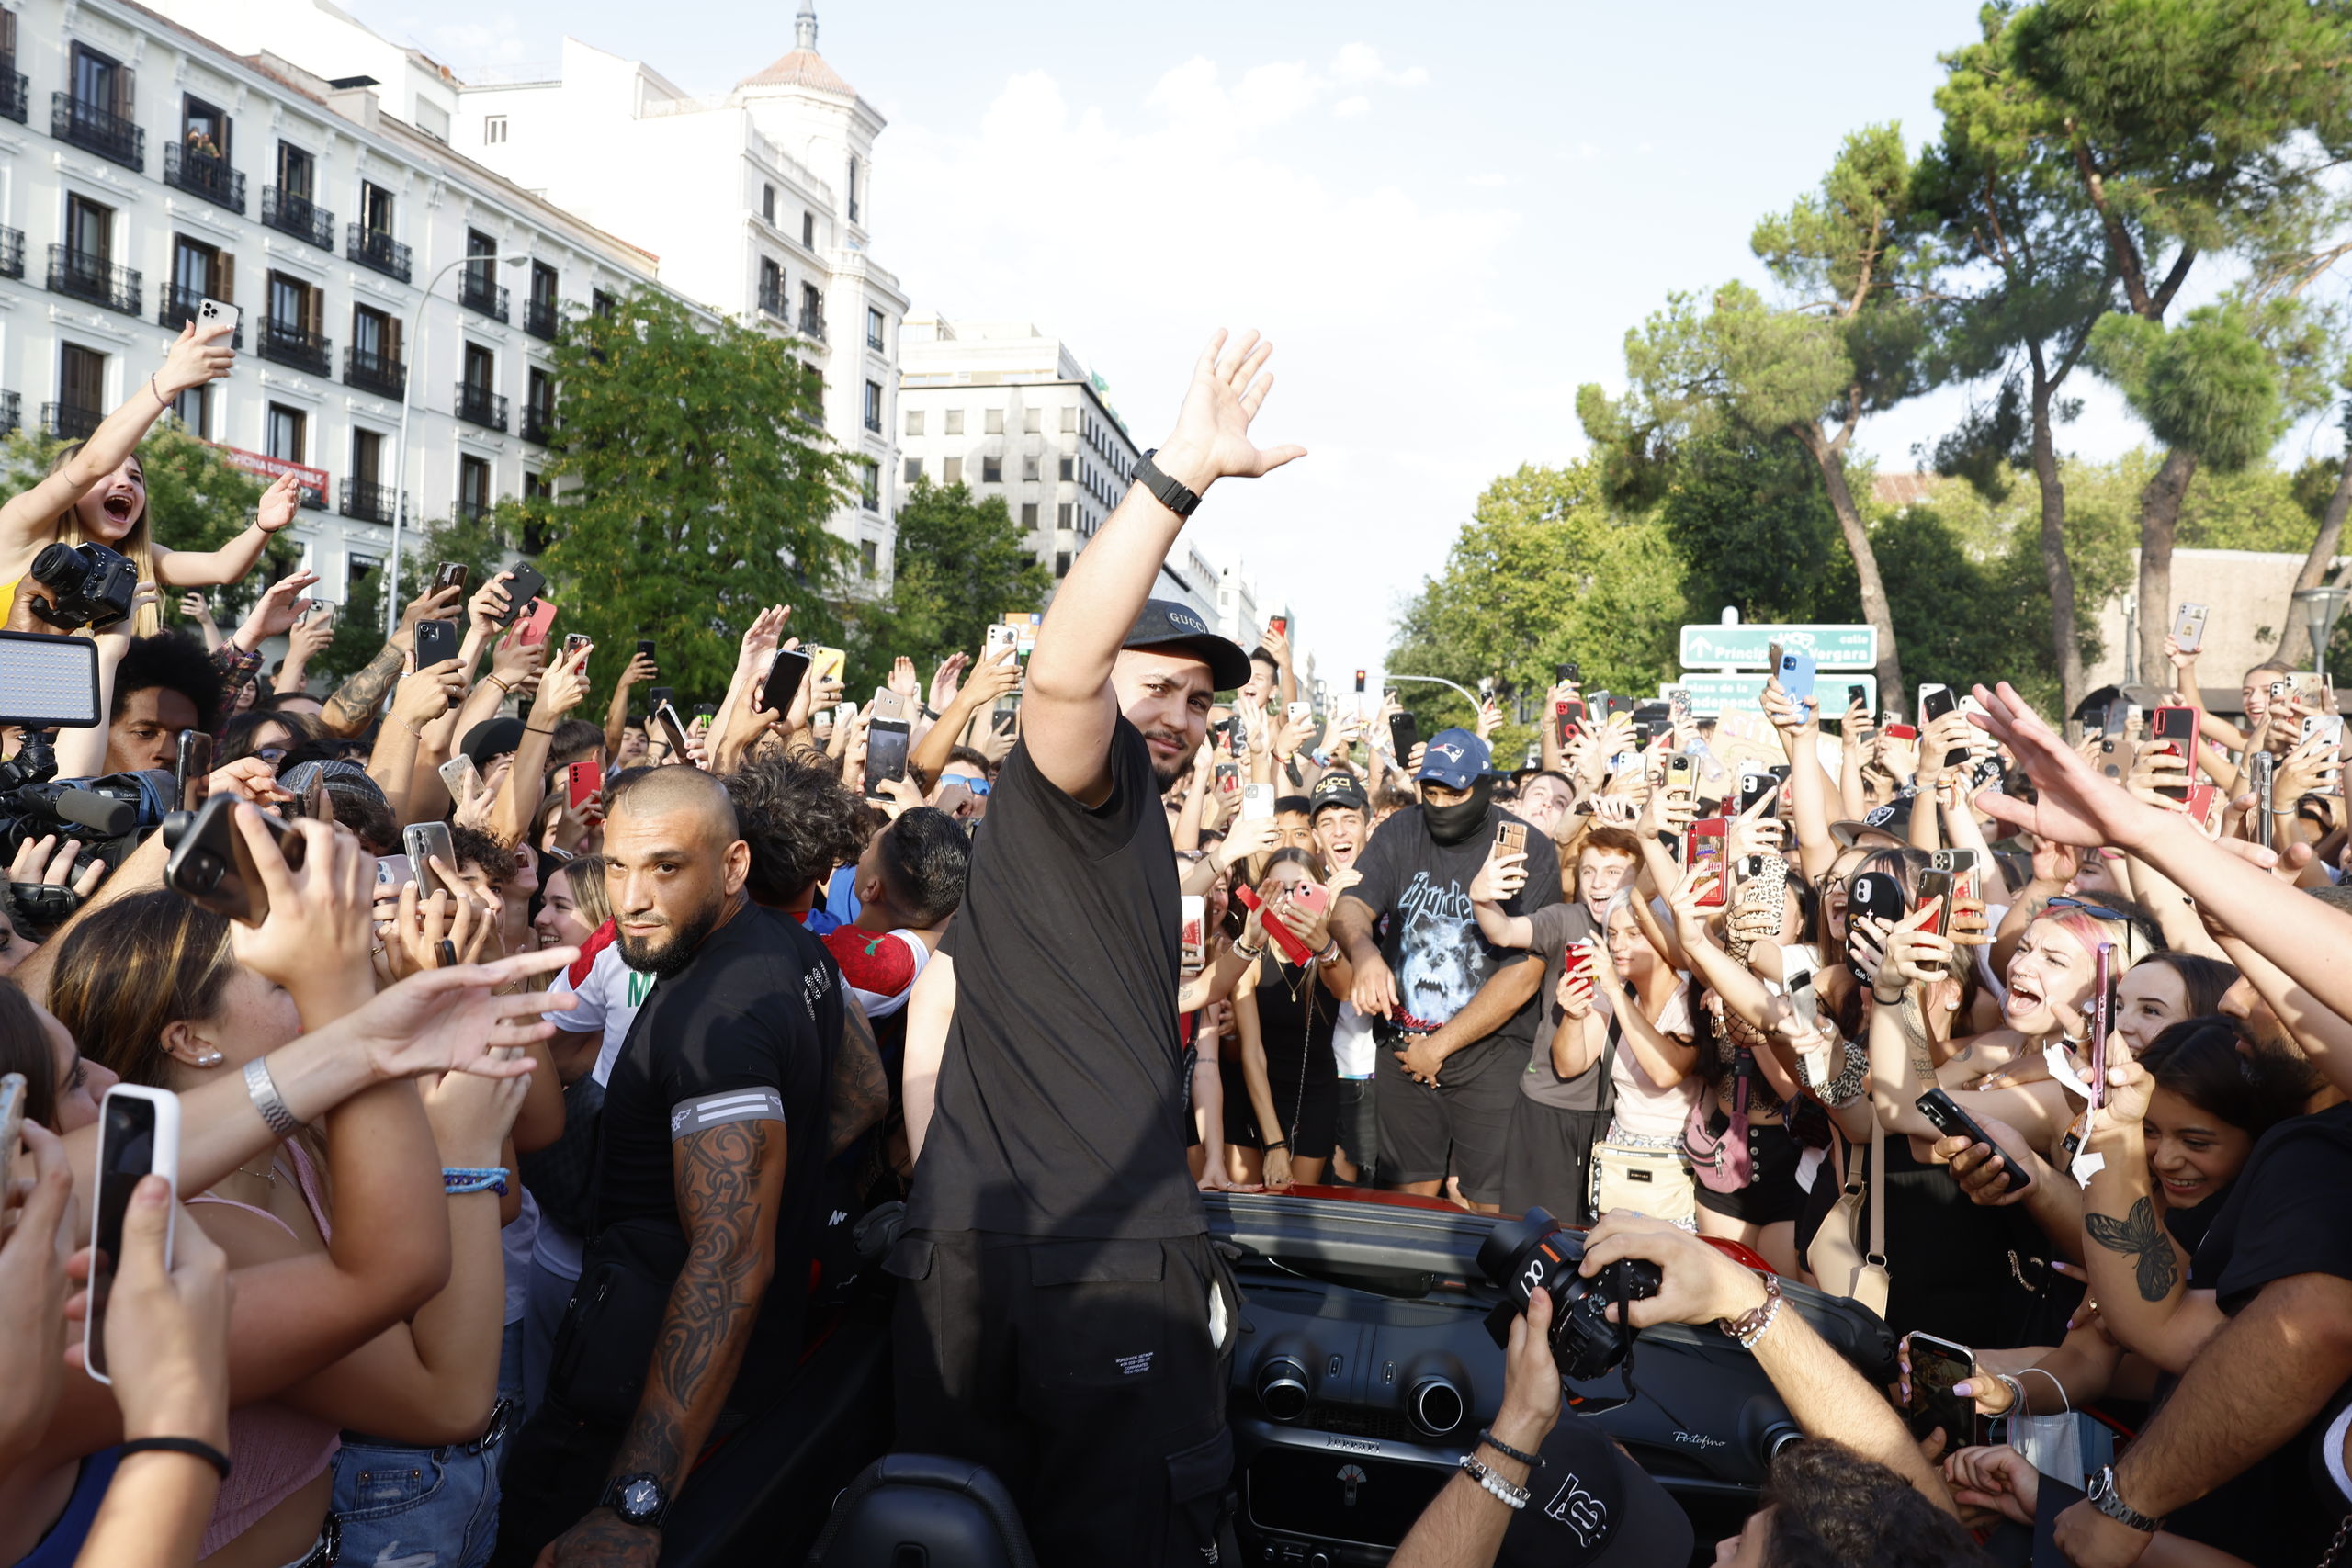 colapsa el centro de Madrid y acaba por Policía - Chic